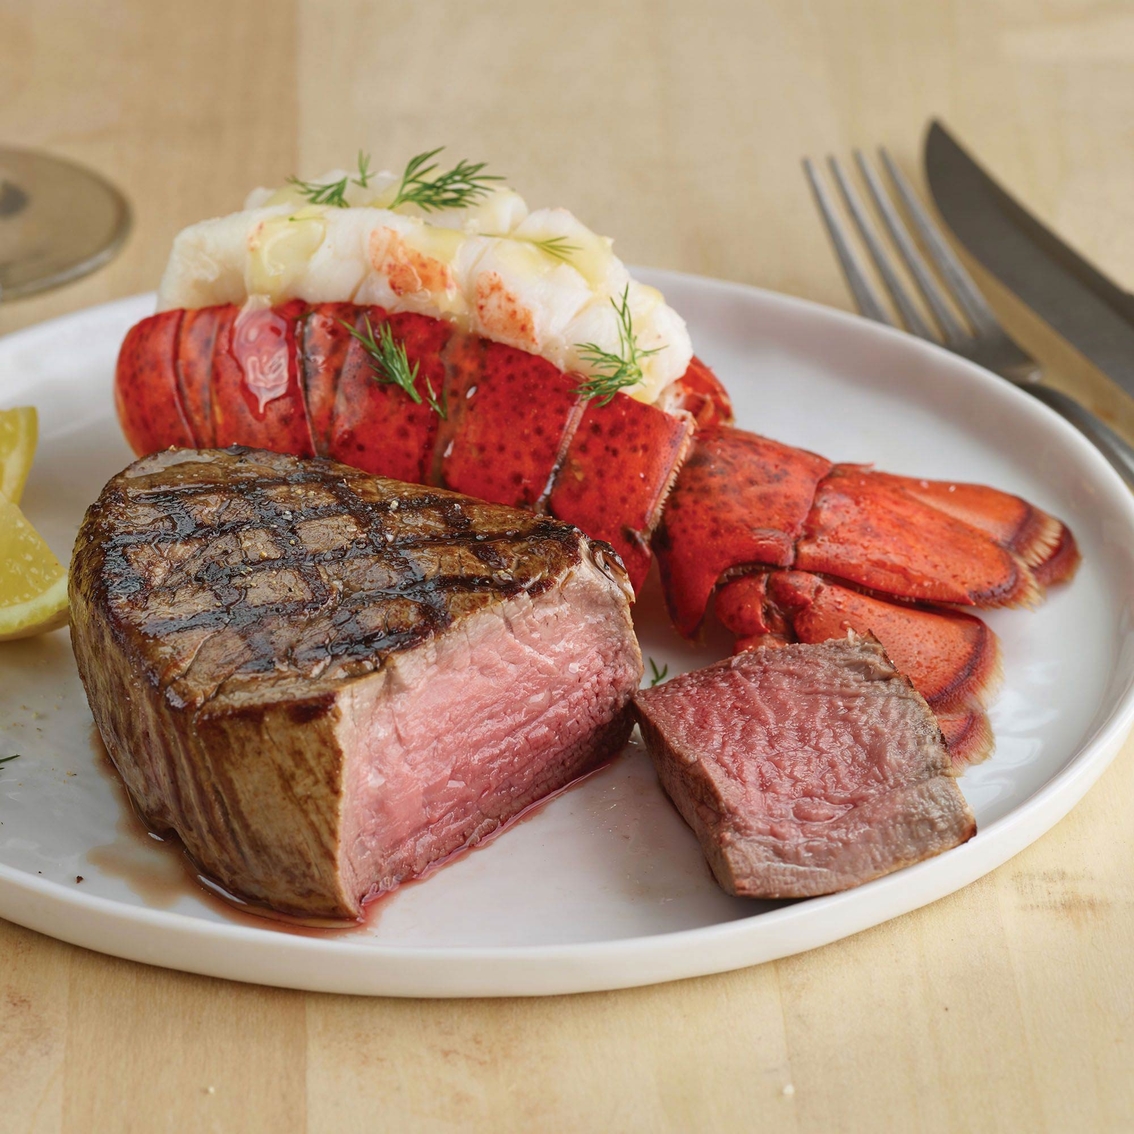 Kansas City Steak Co. Filet and Lobster Dinner for 4